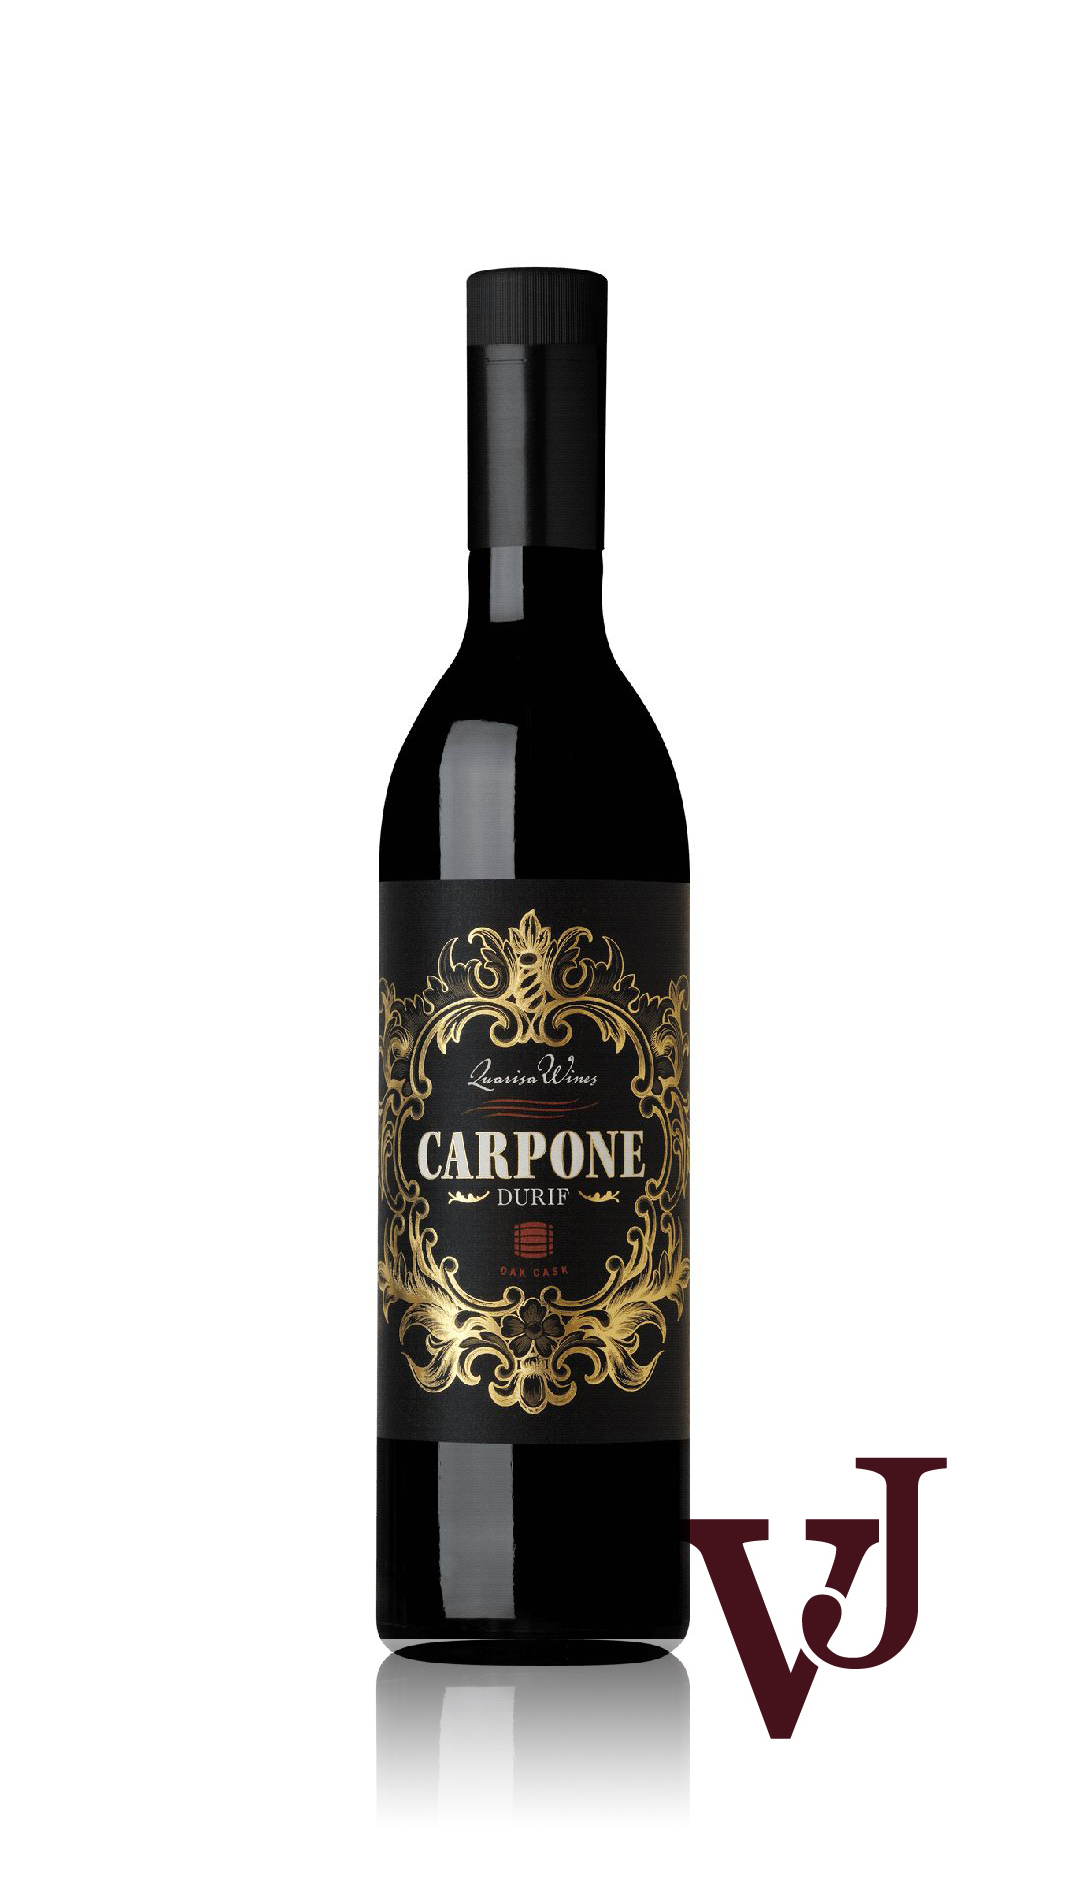 Rött Vin - Carpone Durif artikel nummer 262301 från producenten Quarisa Wines från området Australien - Vinjournalen.se